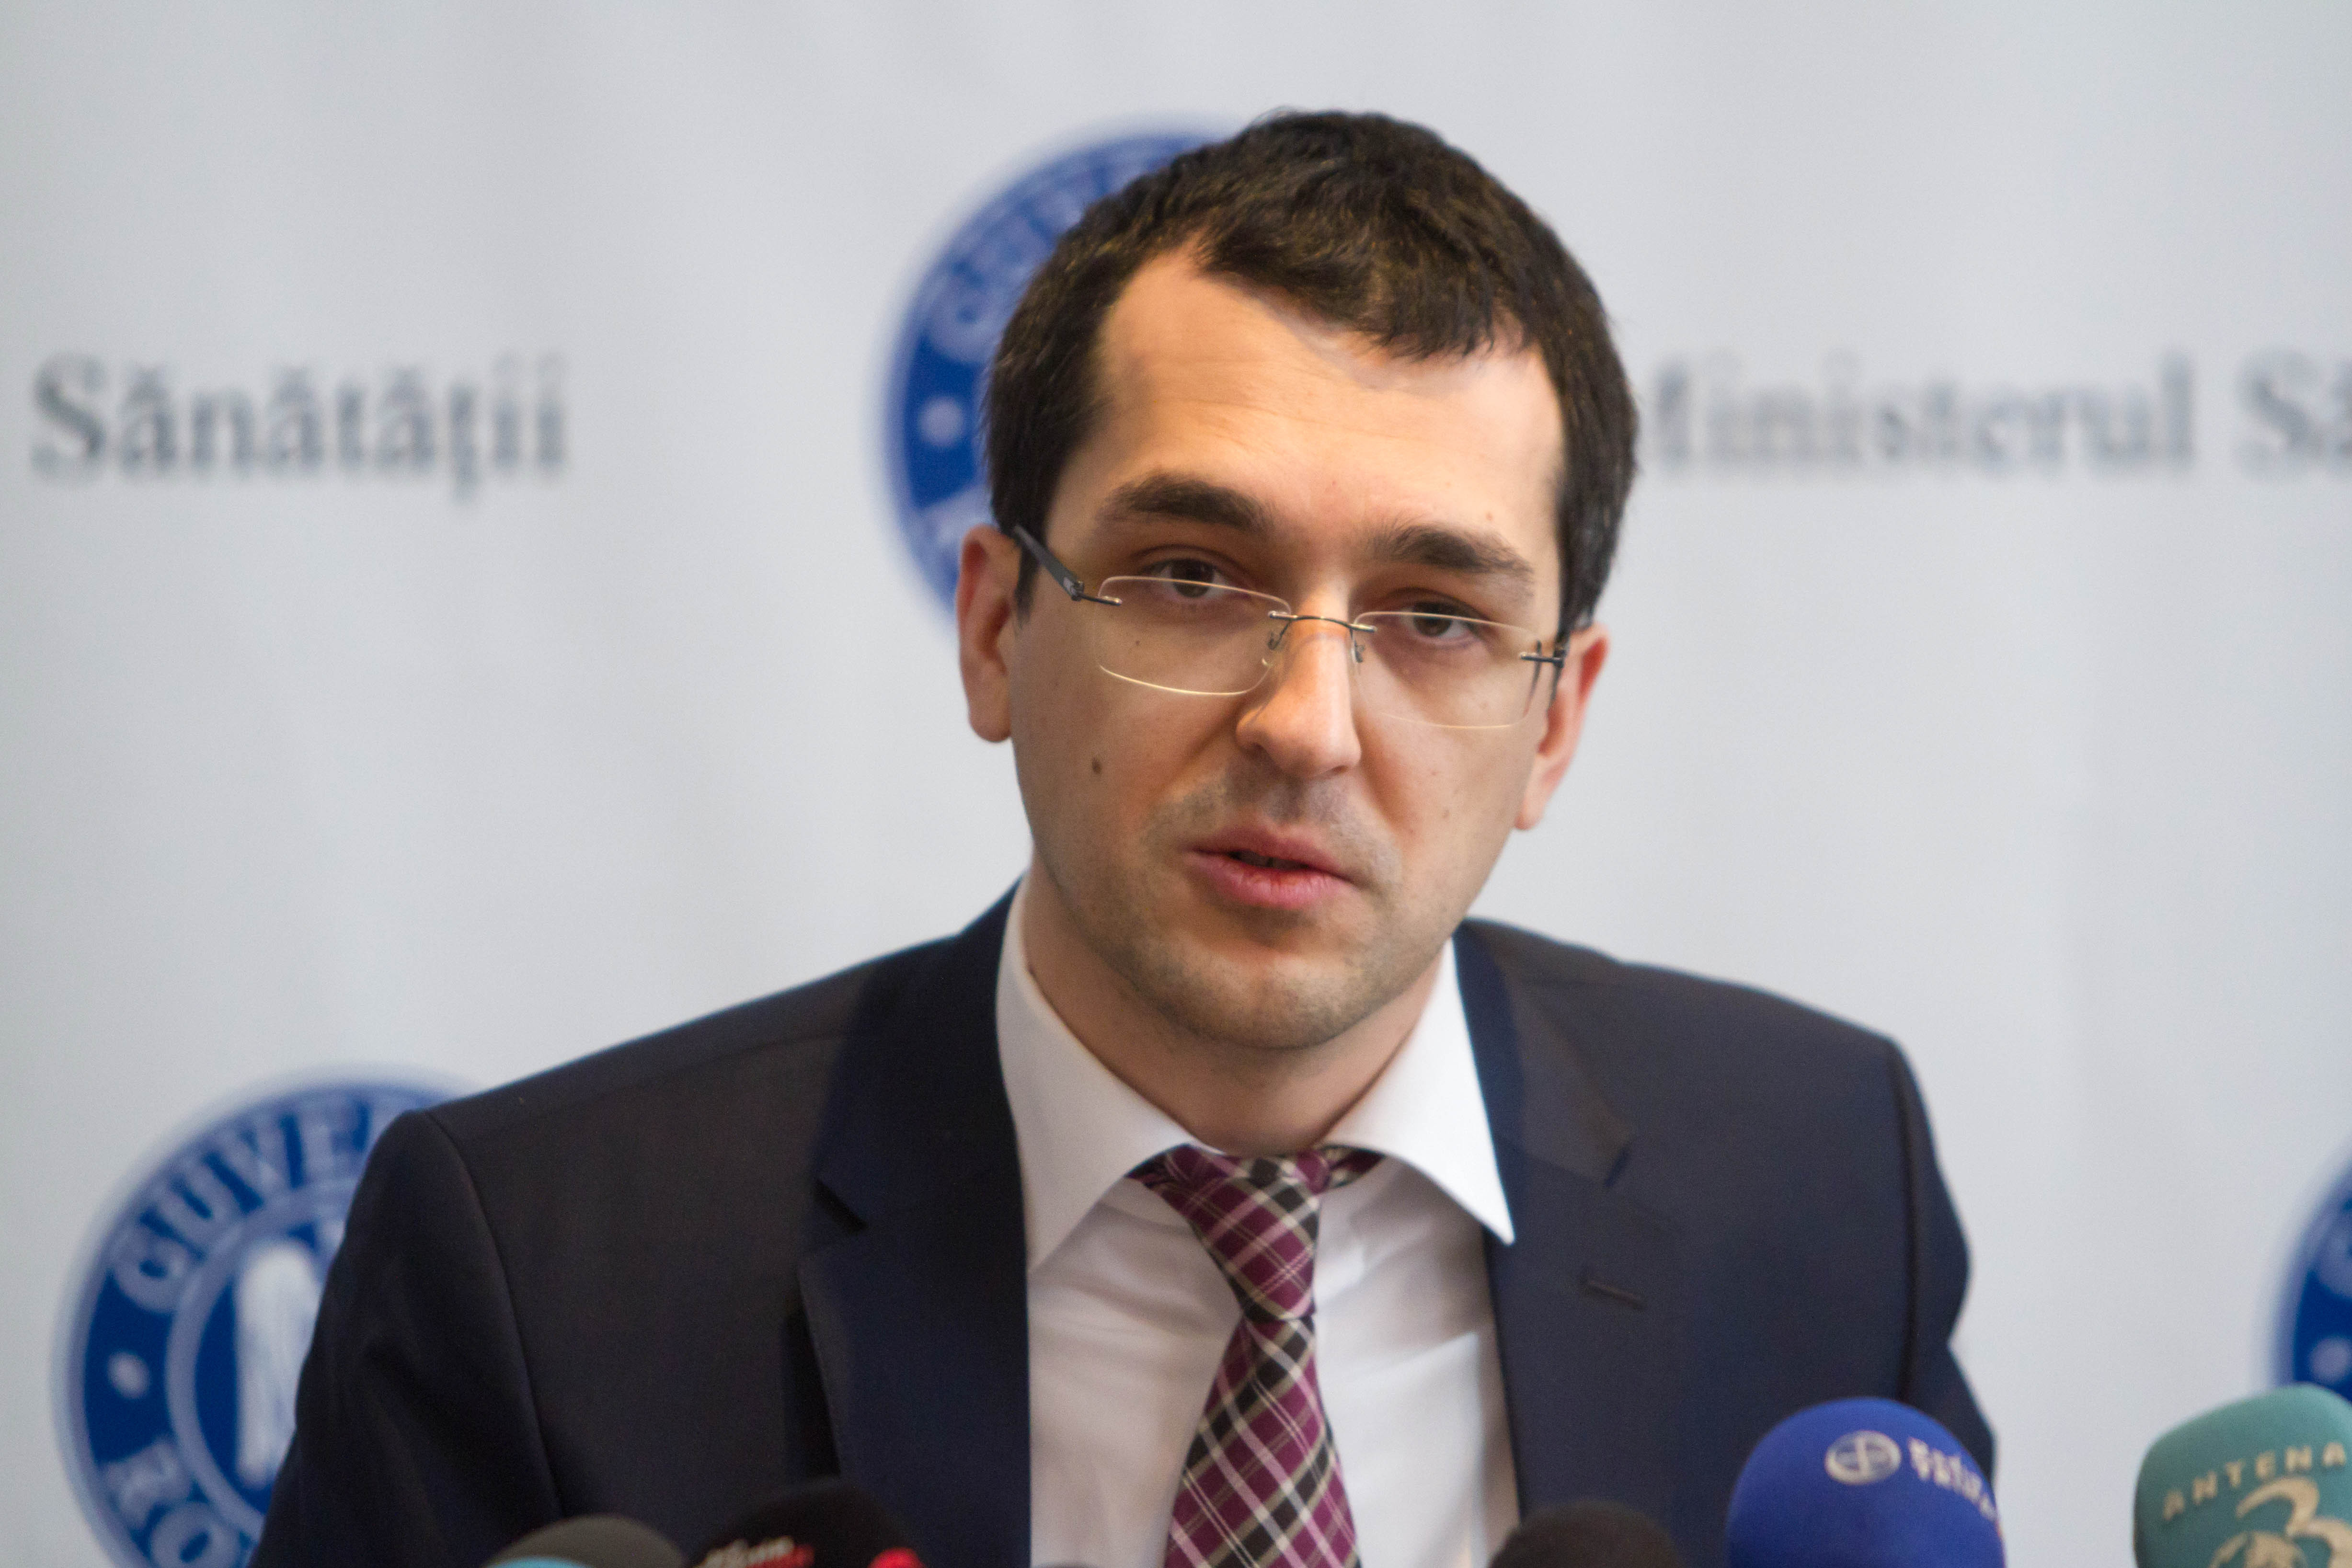 Vlad Voiculescu o atacă pe Firea: Veniturile de 7,2 miliarde la PMB pentru 2020, o minciună. Firea este un jucător de păcănele începe să vândă din casă